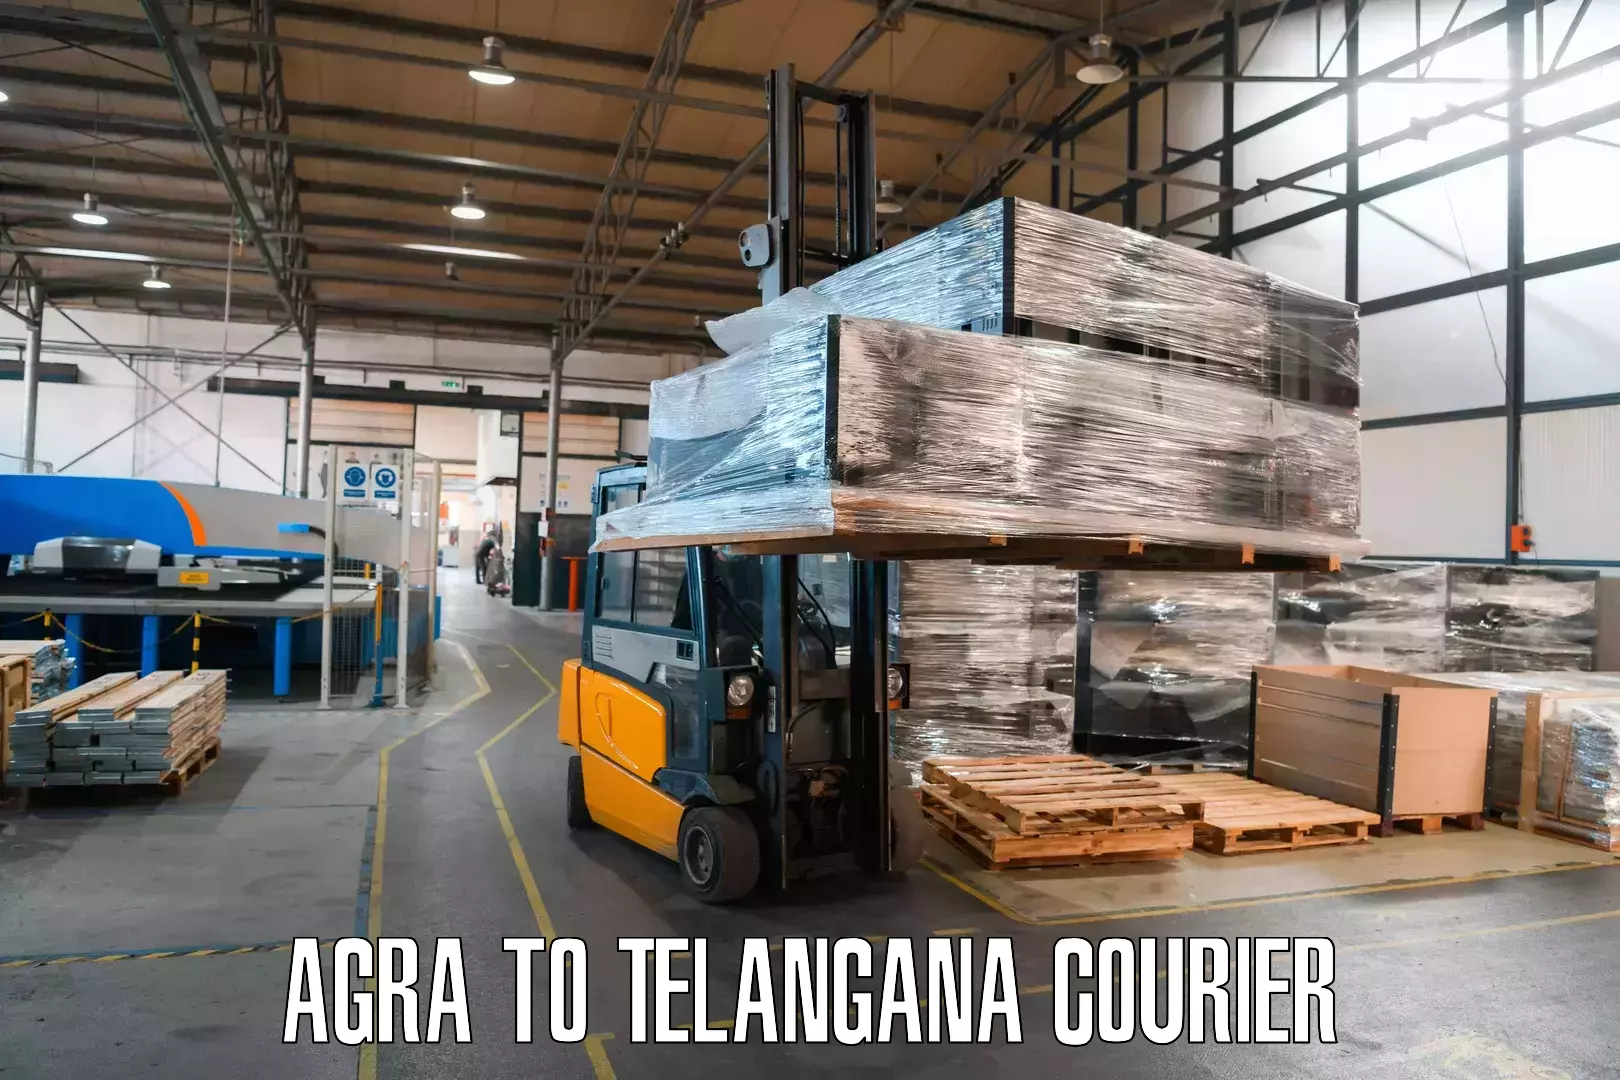 Customized shipping options Agra to Jogulamba Gadwal